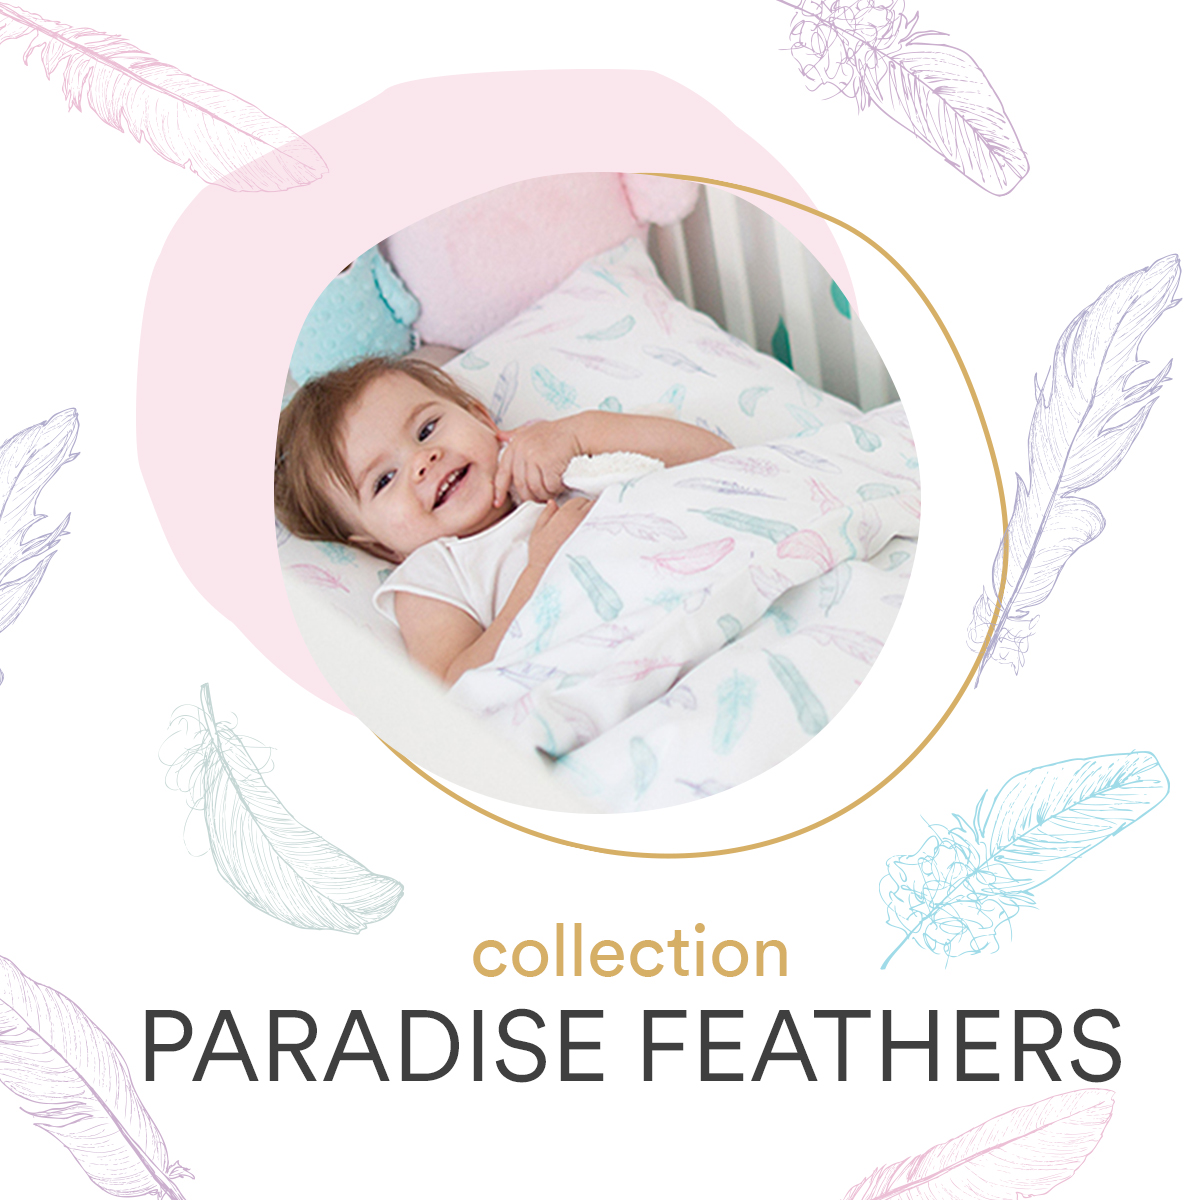 Paradise feathers